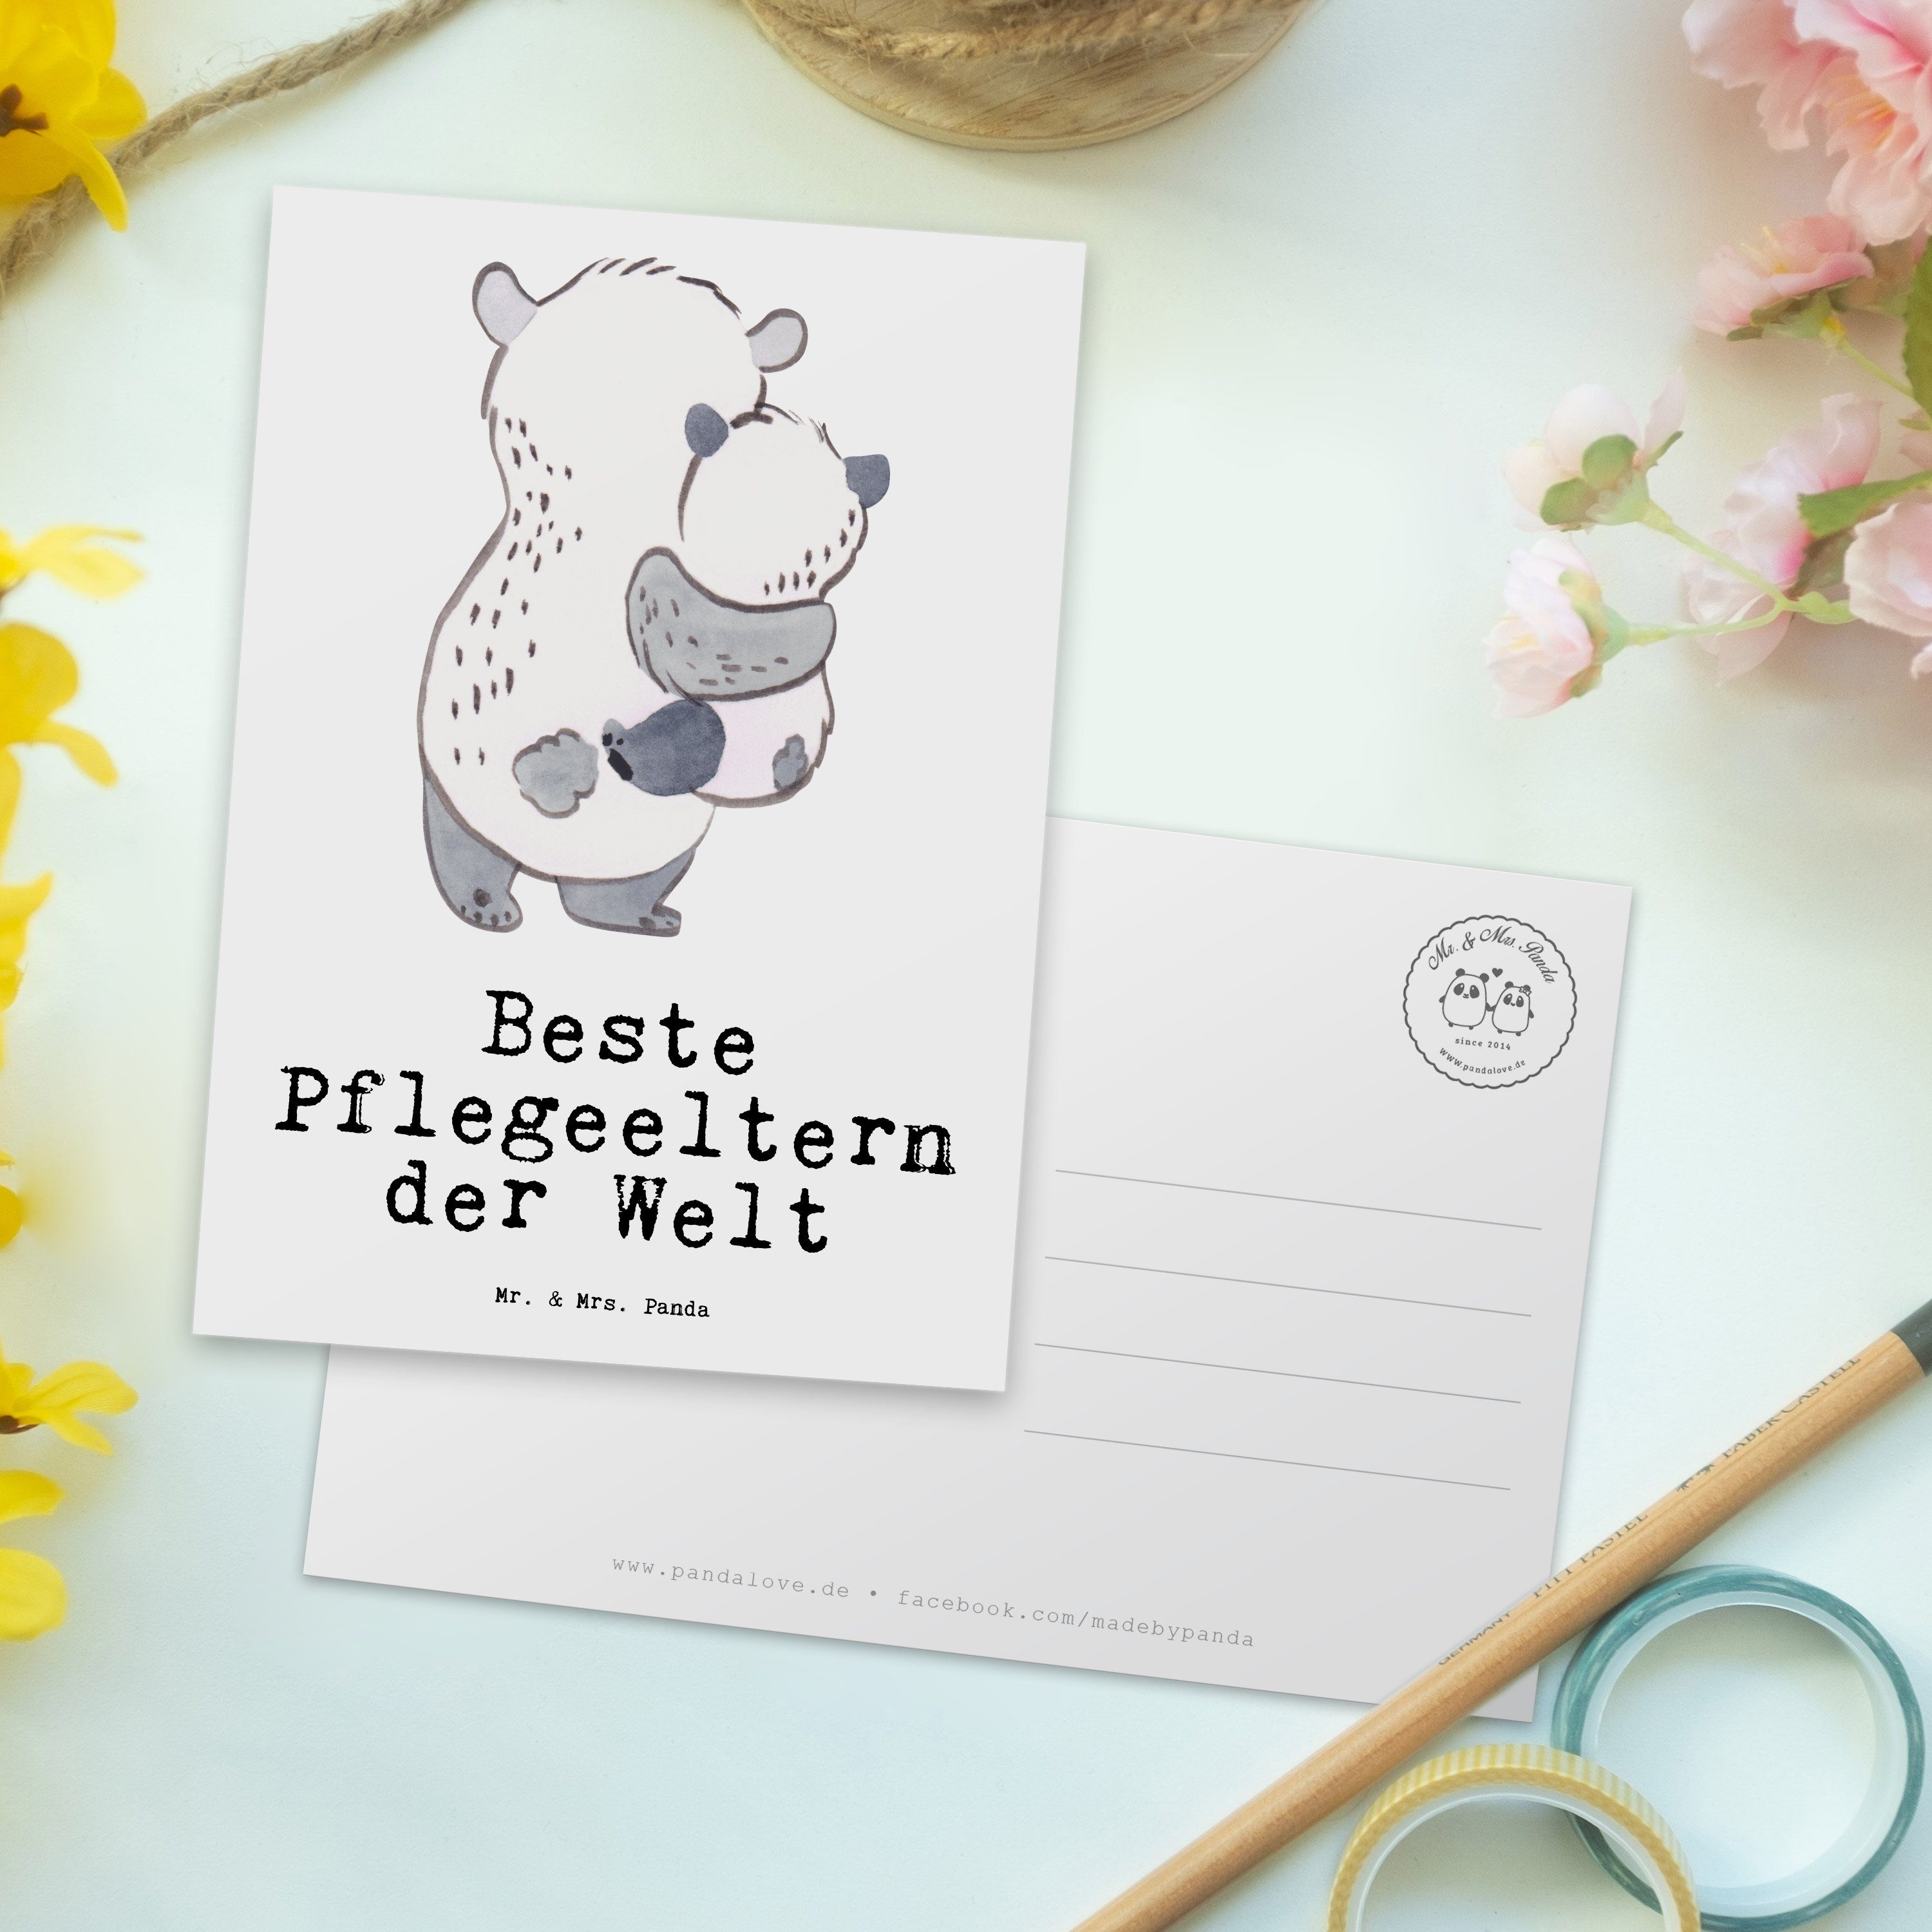 Geburtstagskarte Mr. - Panda Mrs. Geschenk, der Postkarte Beste - Pflegeeltern Weiß & Panda Welt